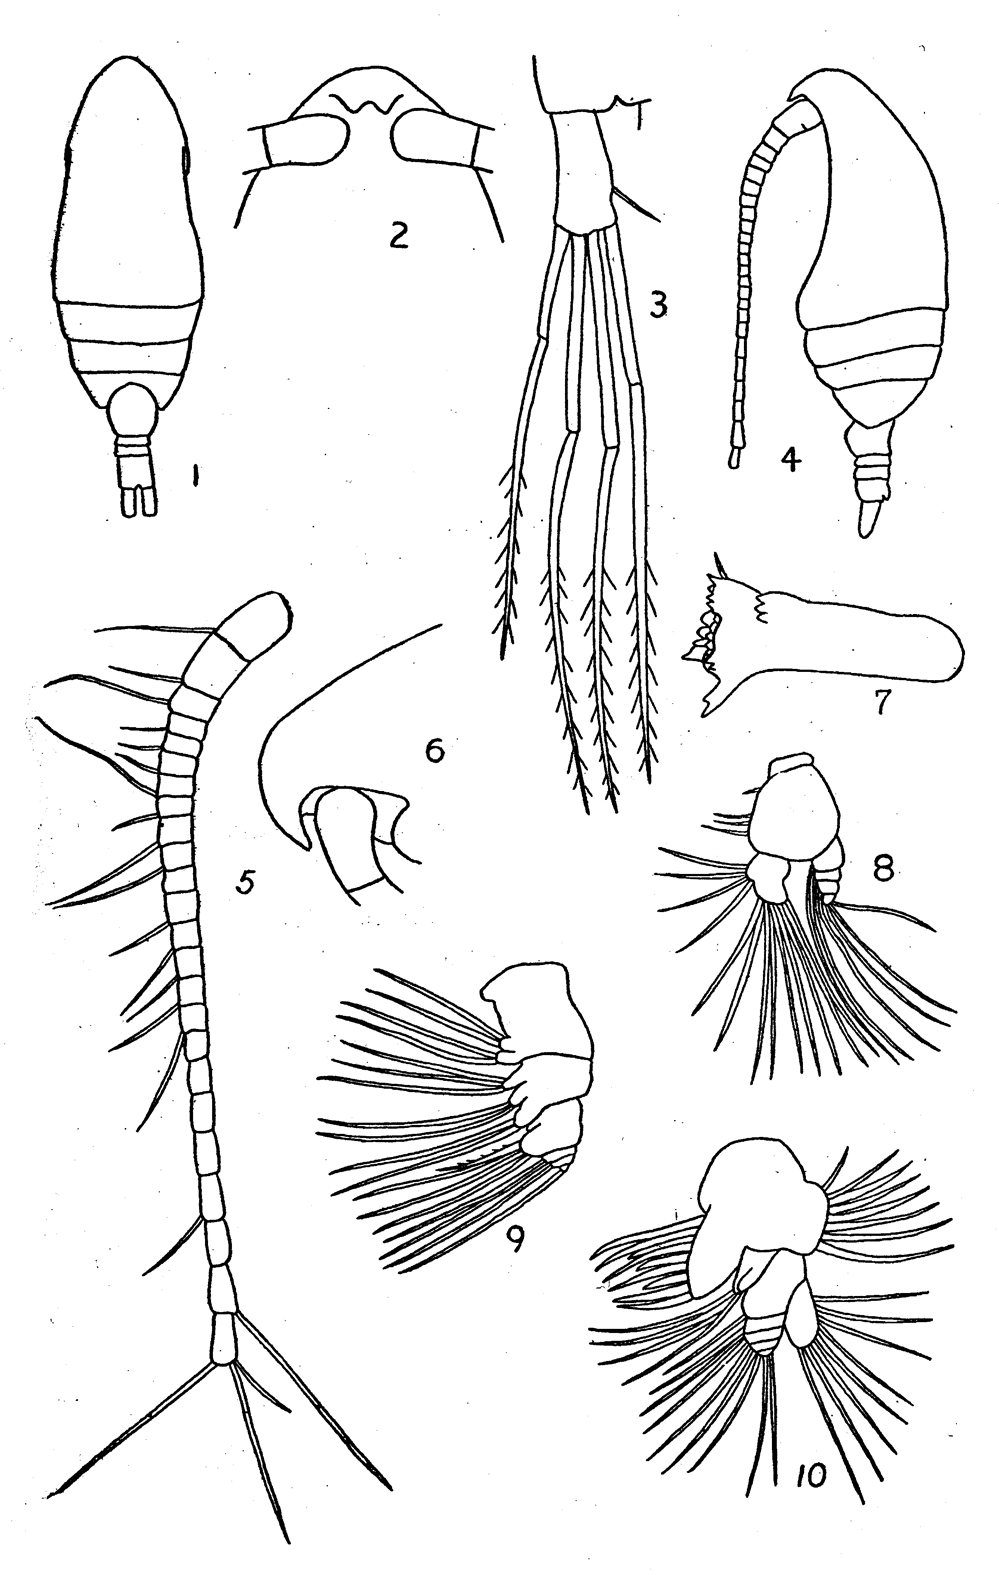 Espce Parvocalanus crassirostris - Planche 16 de figures morphologiques